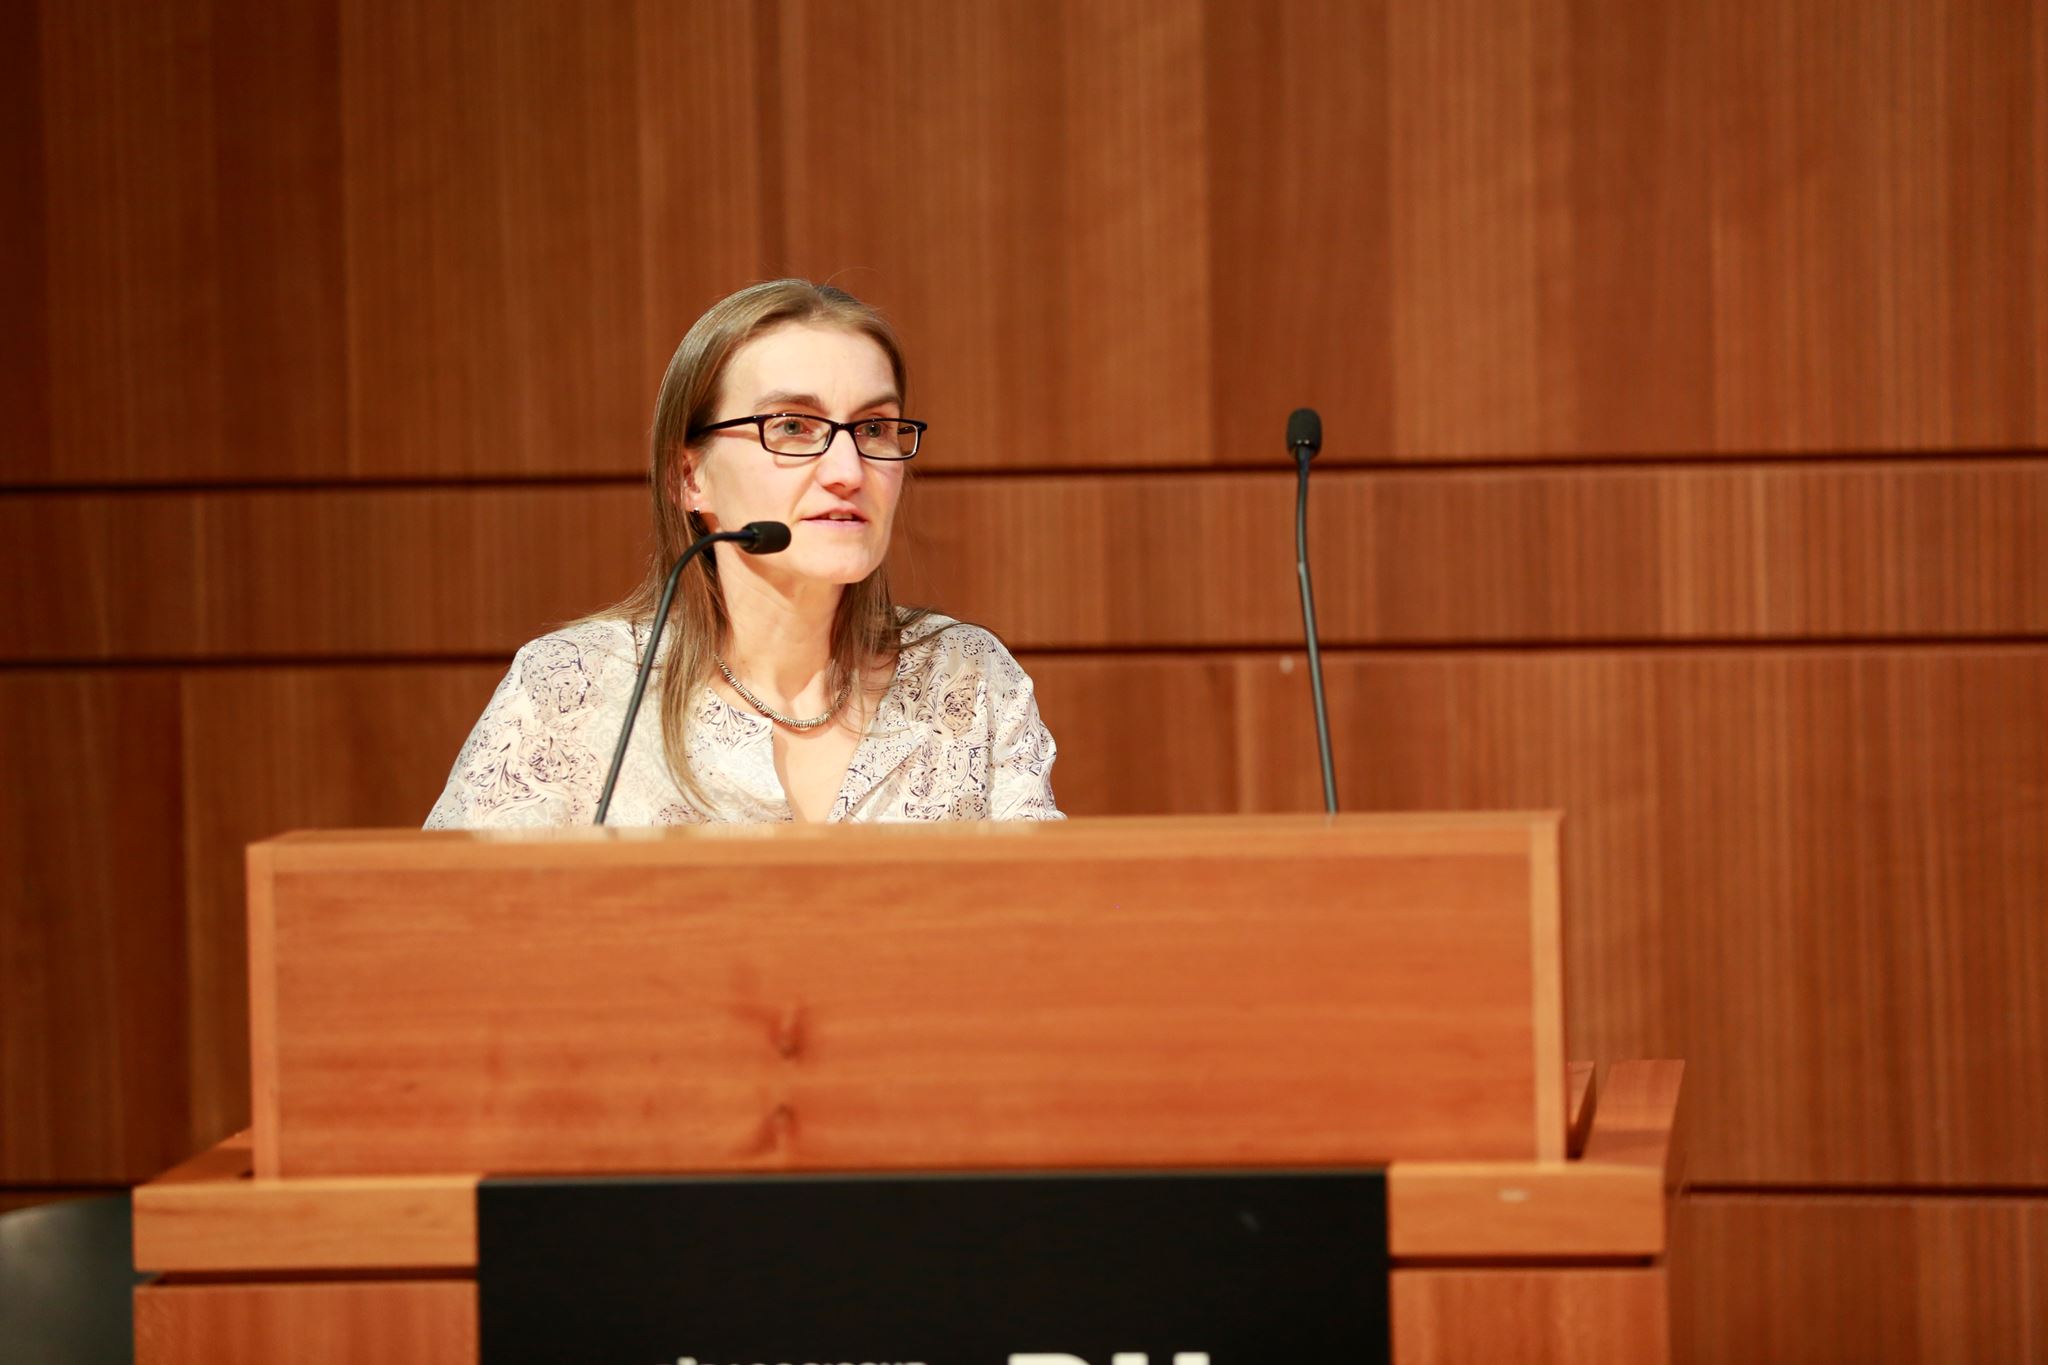 Luzia Annen, Programmleiterin der Weiterbildungen zum Lehrplan 21 an der PH Zürich